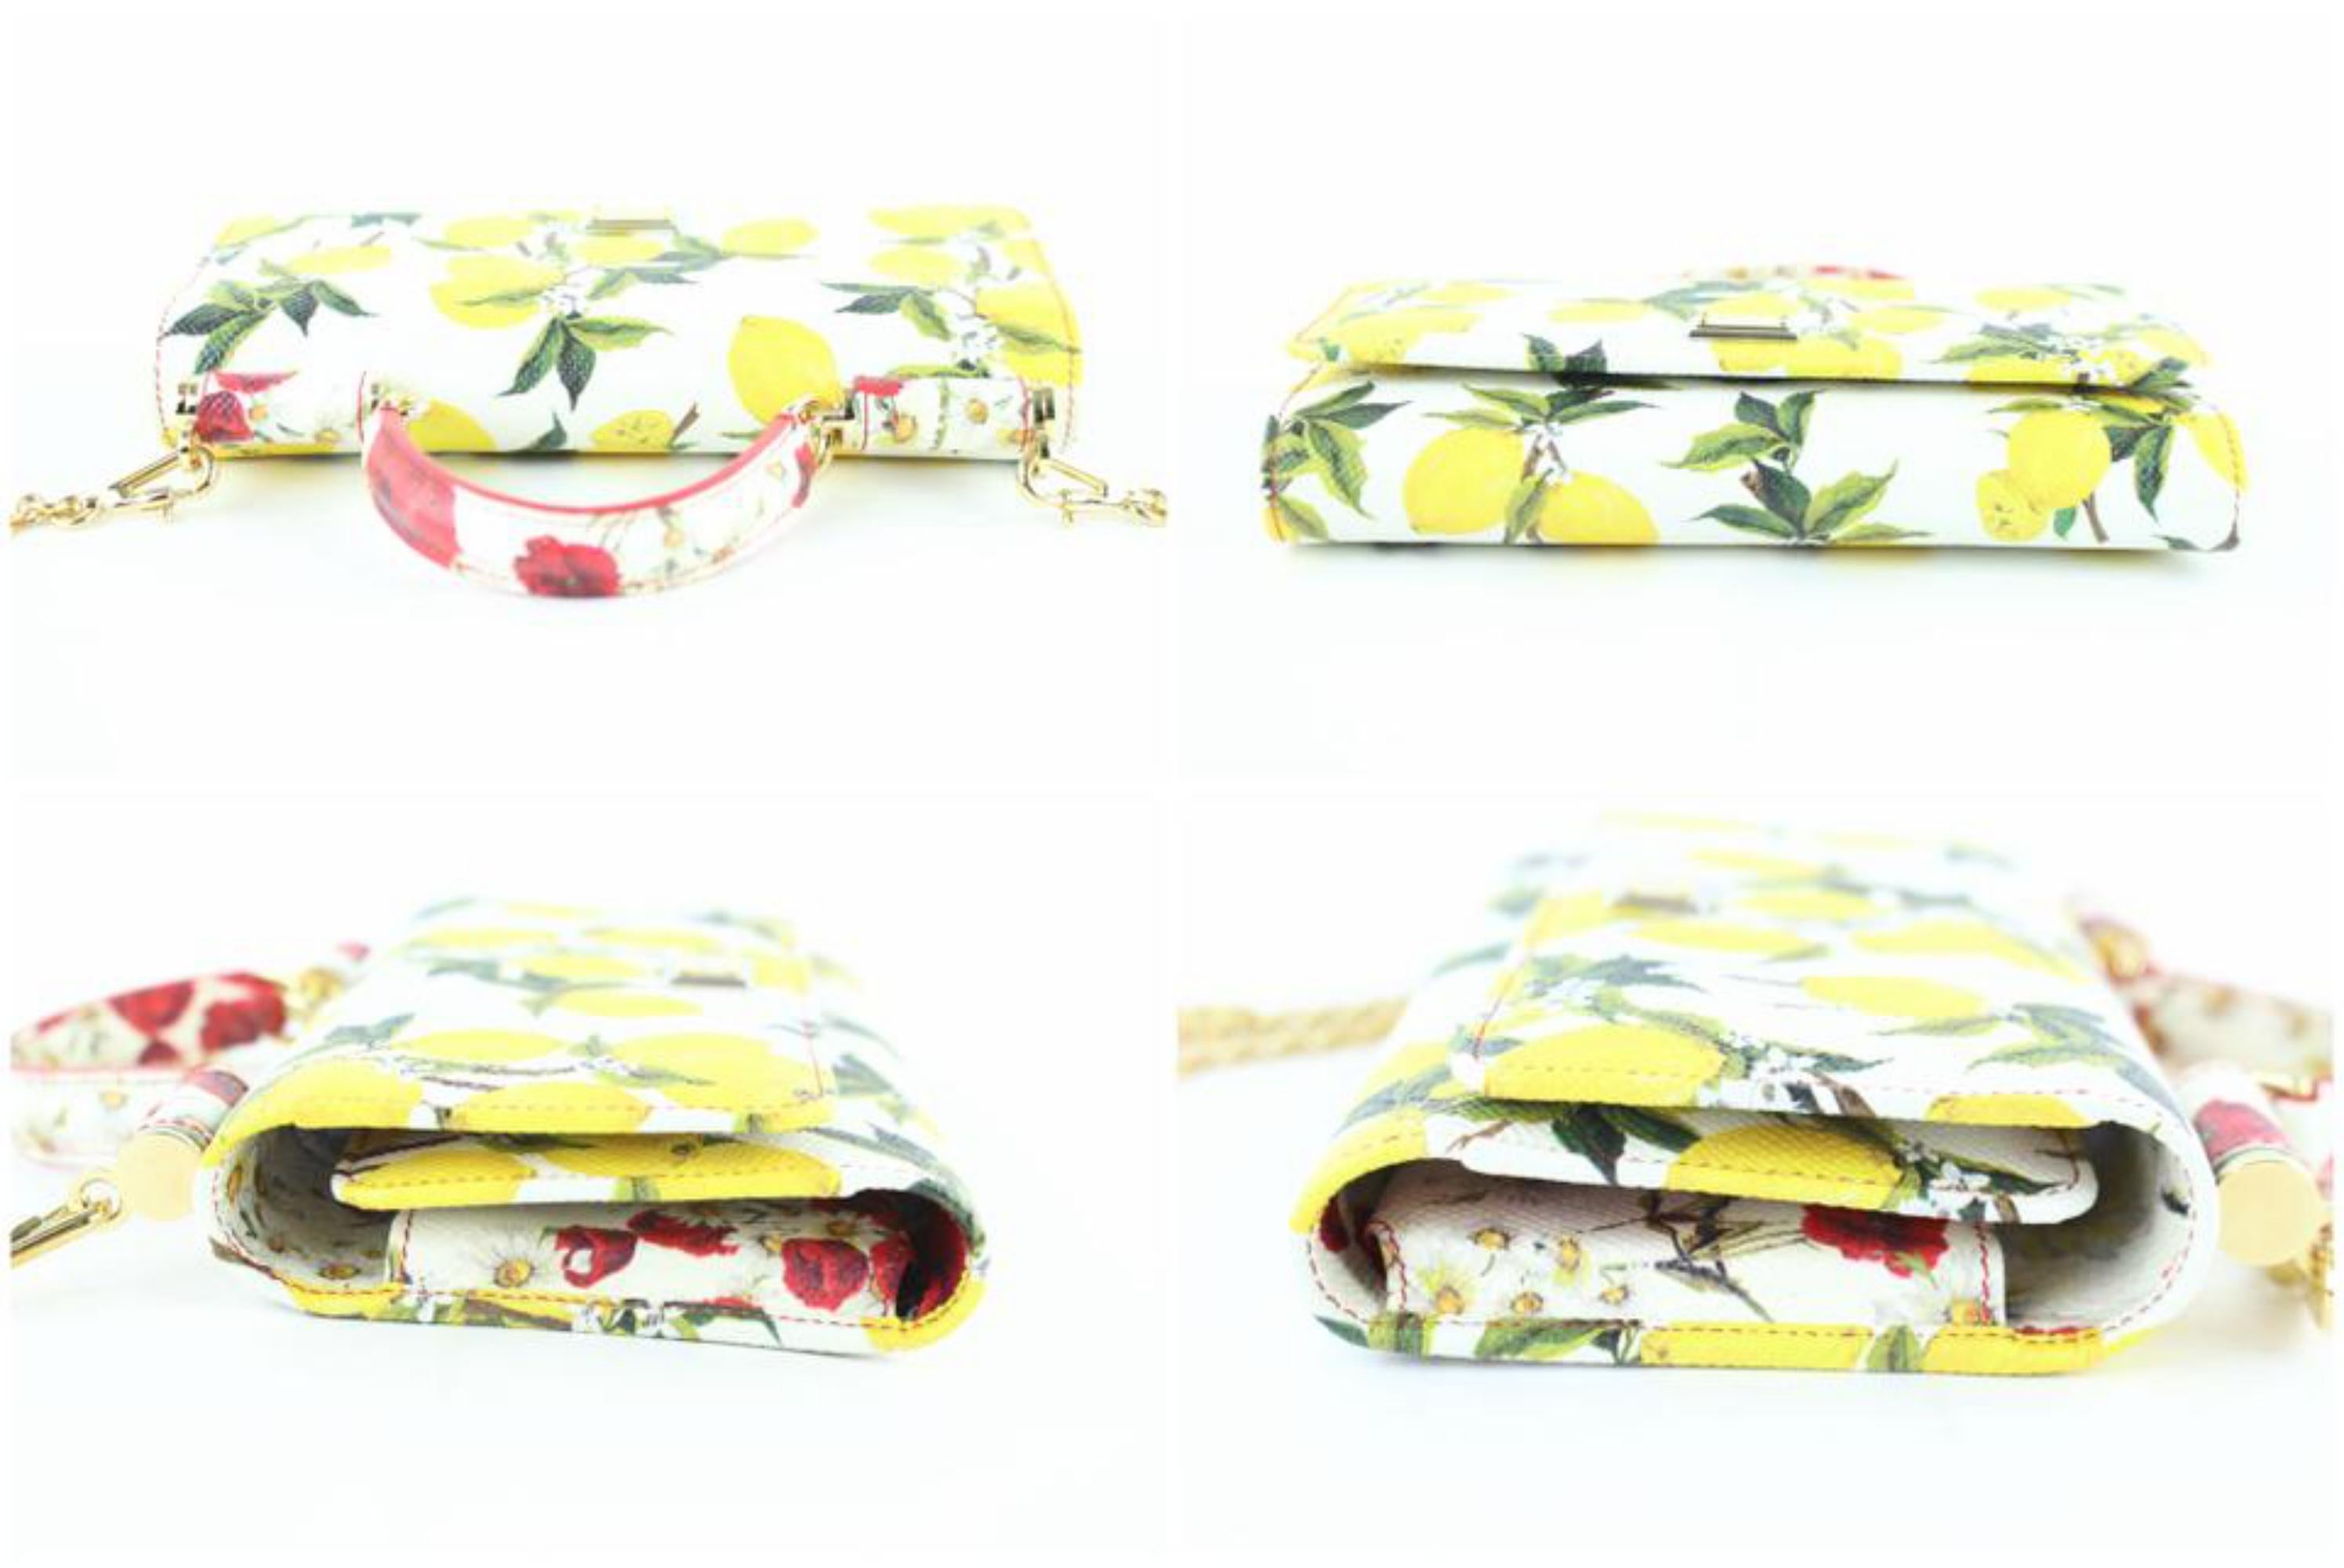 Dolce&Gabbana Chain Bag Lemon Motif Mini Sicily Von Phone 14me0110 Satchel For Sale 2